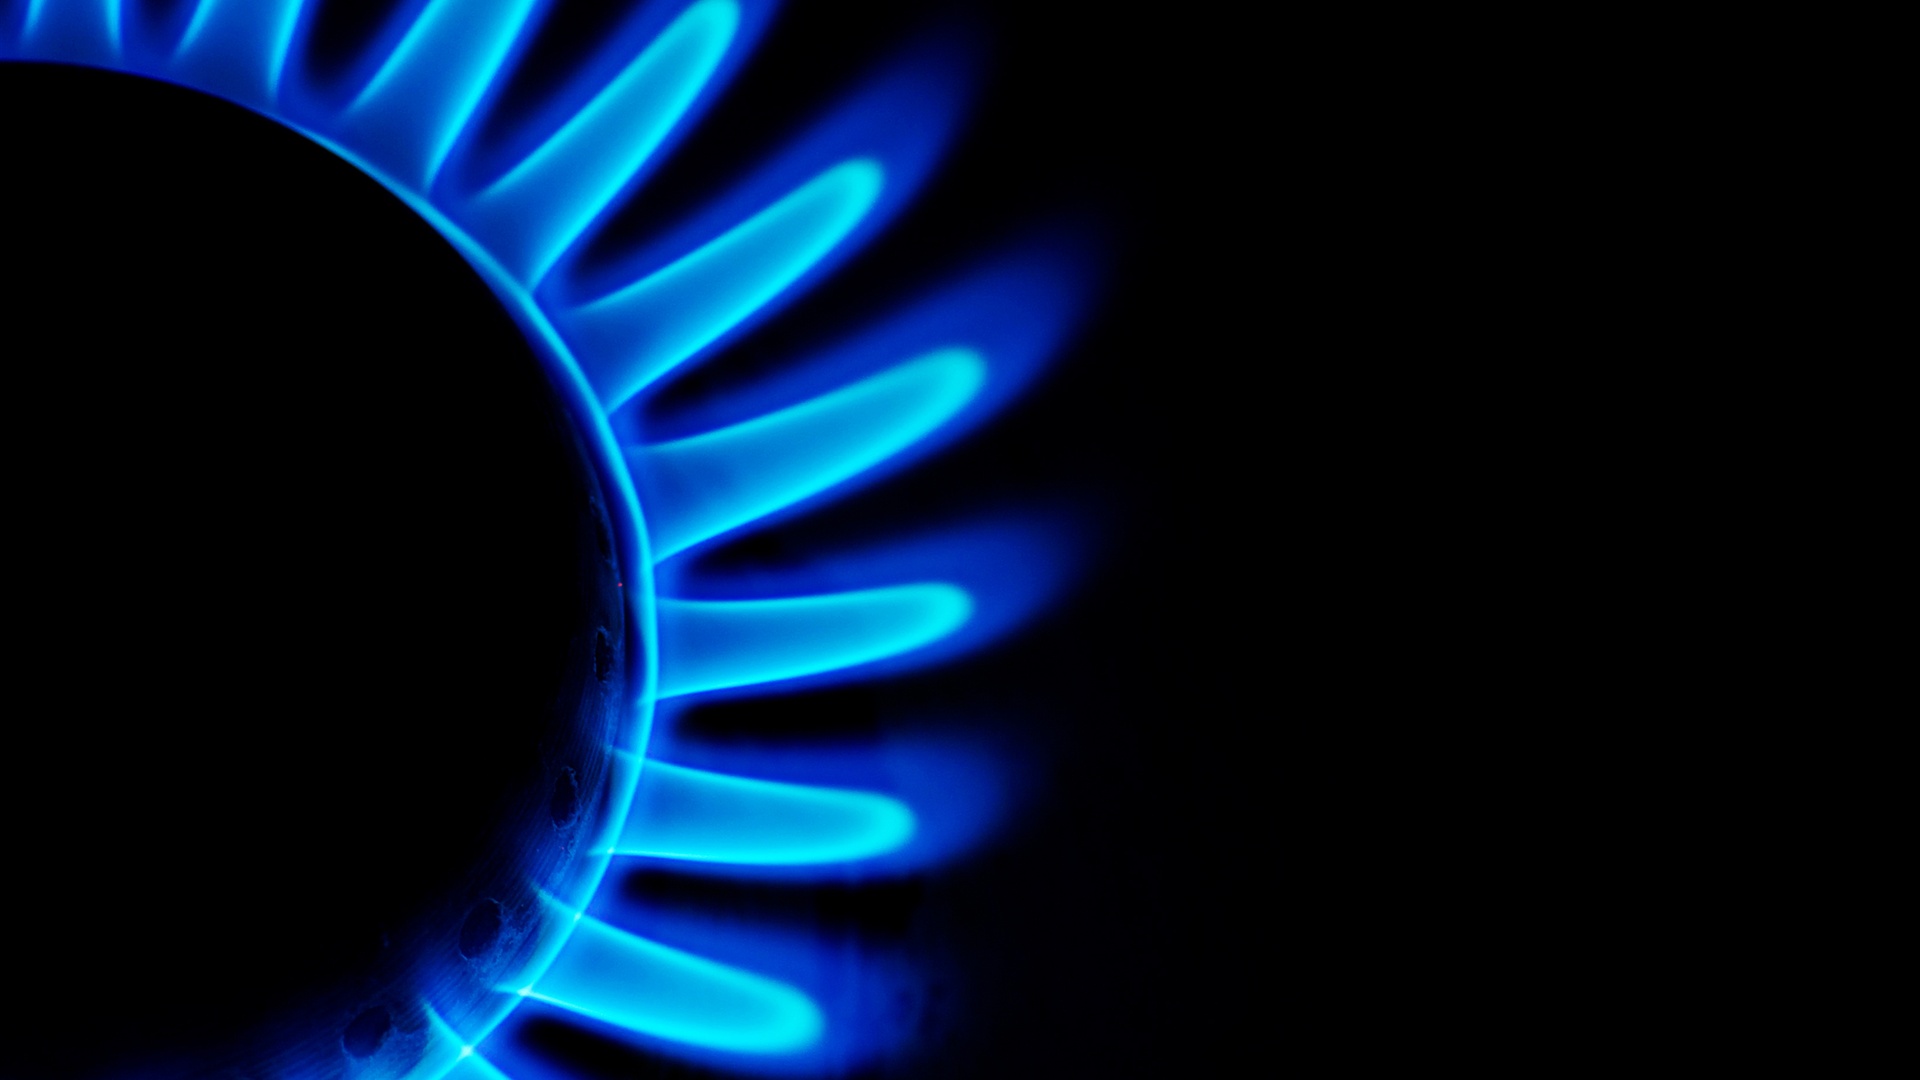 تصویر هنری و خلاقانه از شعله اجاق گاز به رنگ آبی با کیفیت Full HD